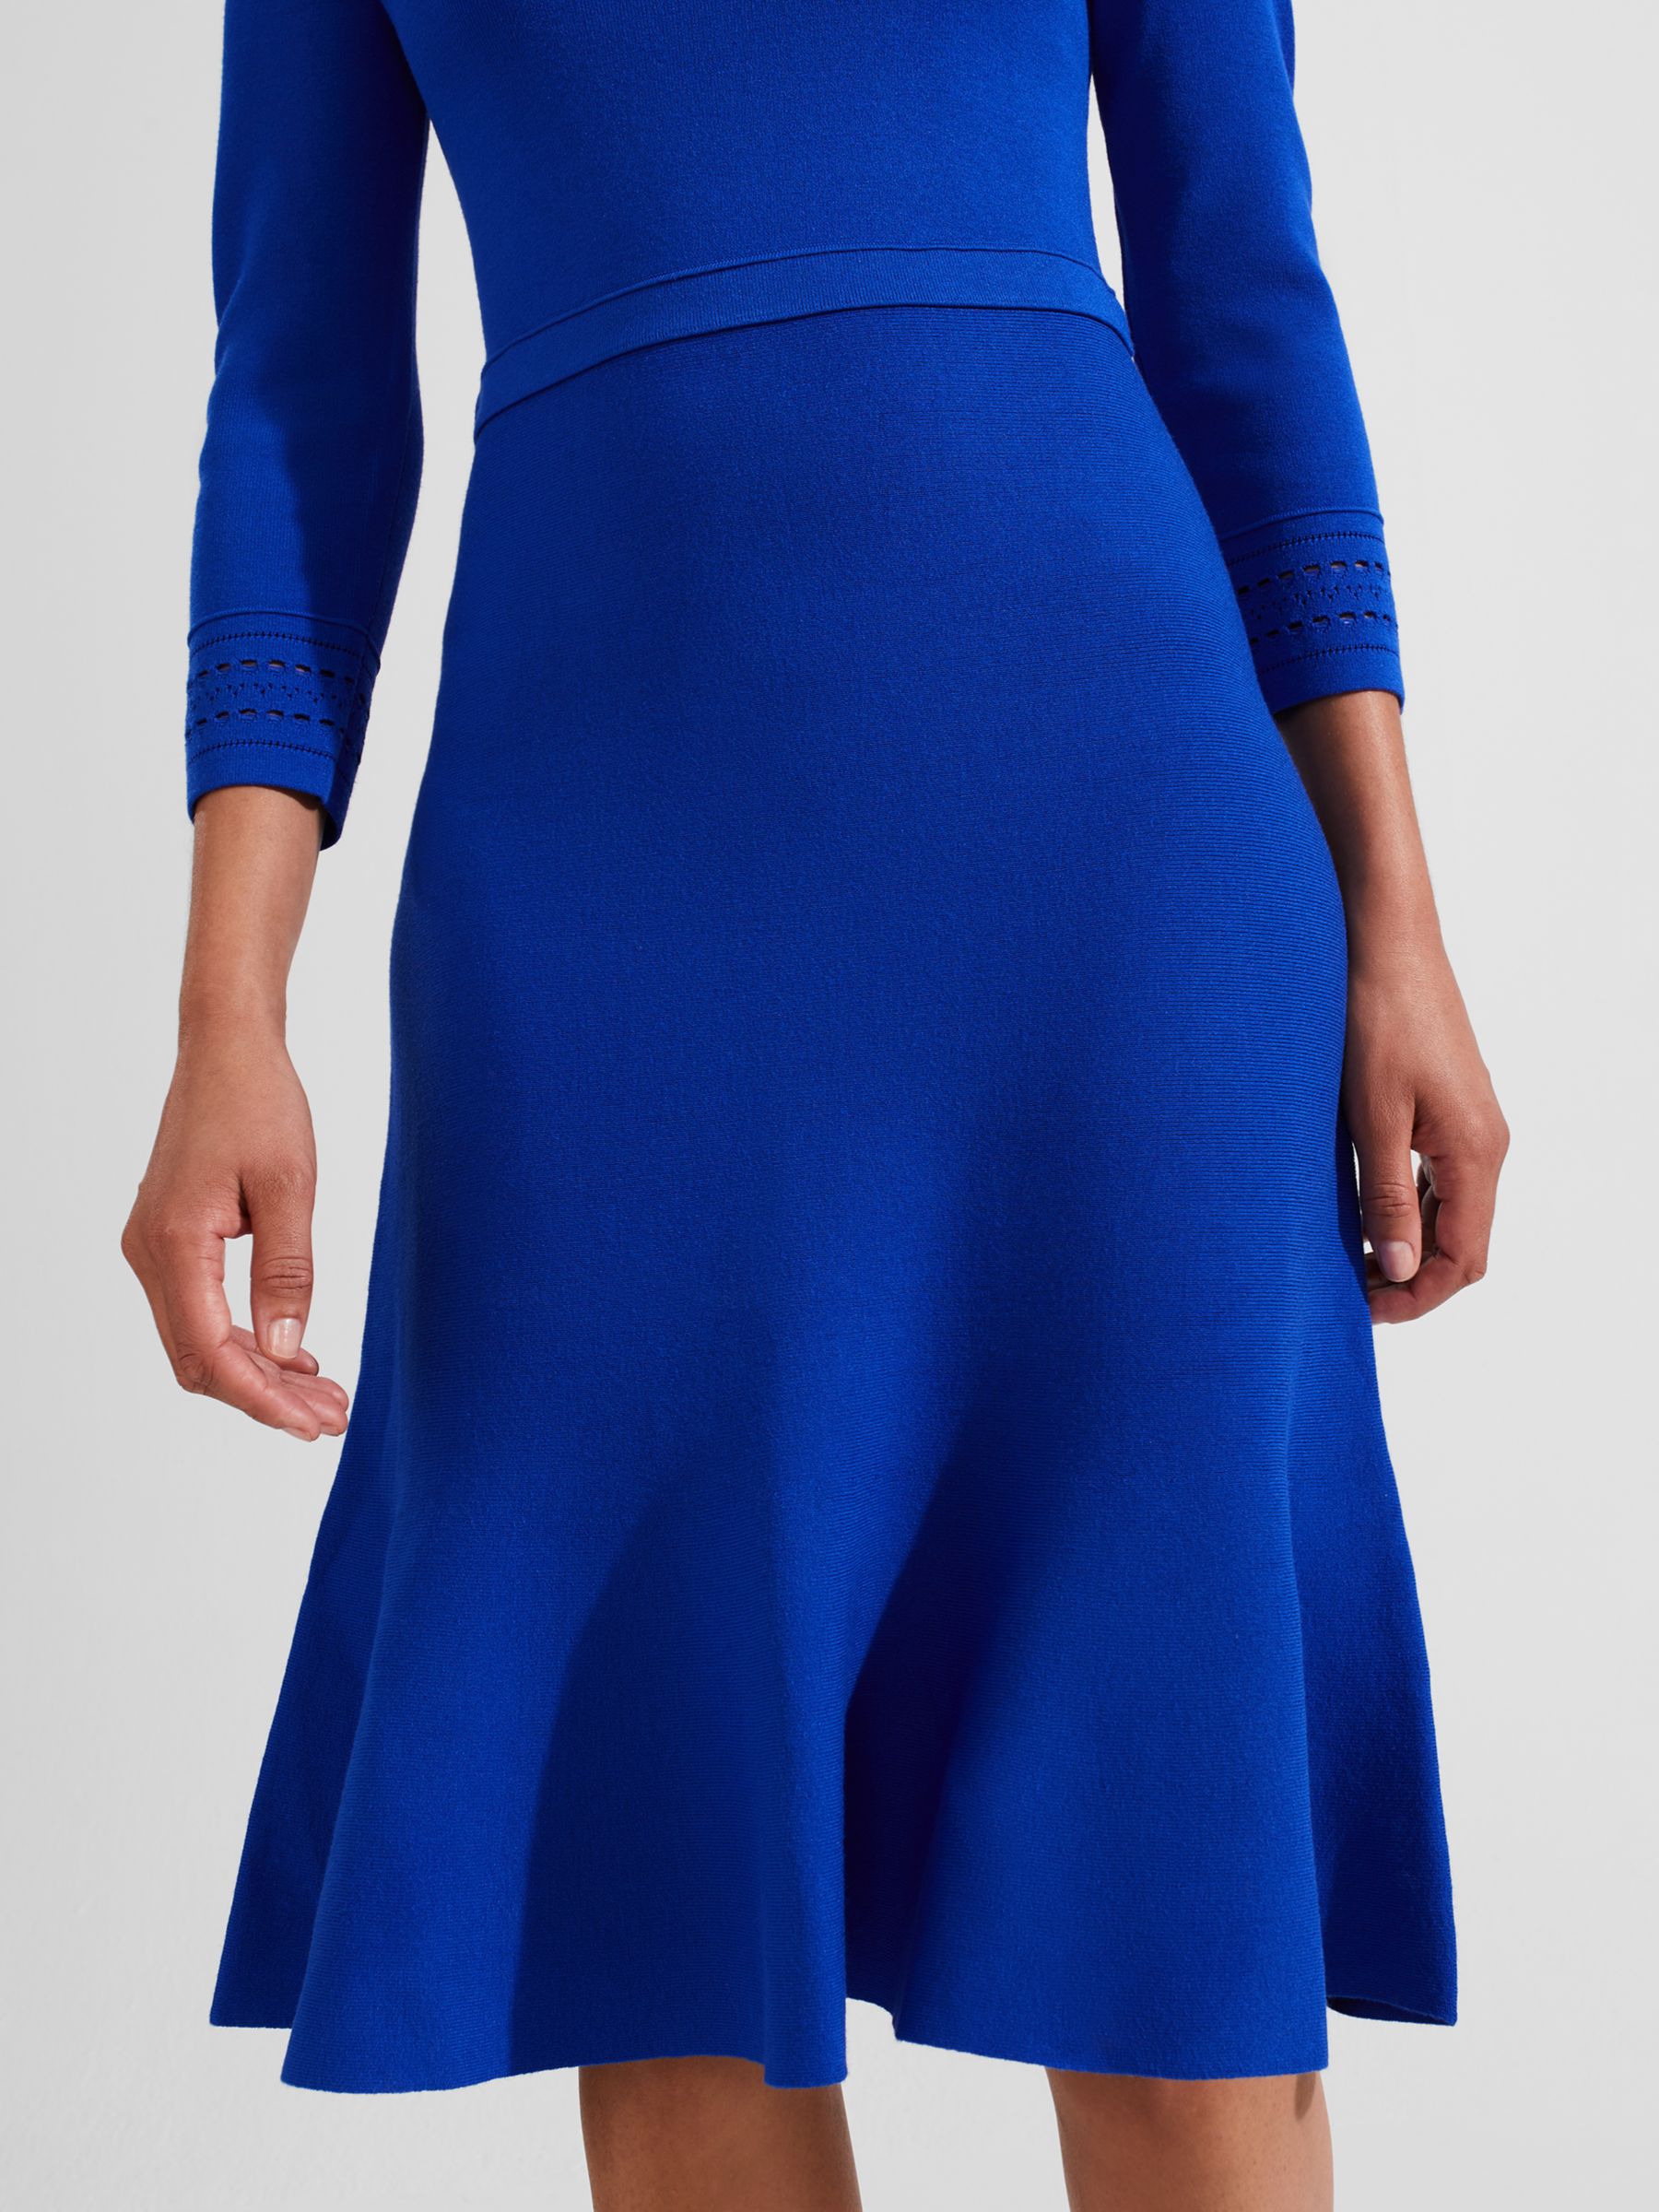 Hobbs Quinn Knitted Dress, Egyptian Blue, 10